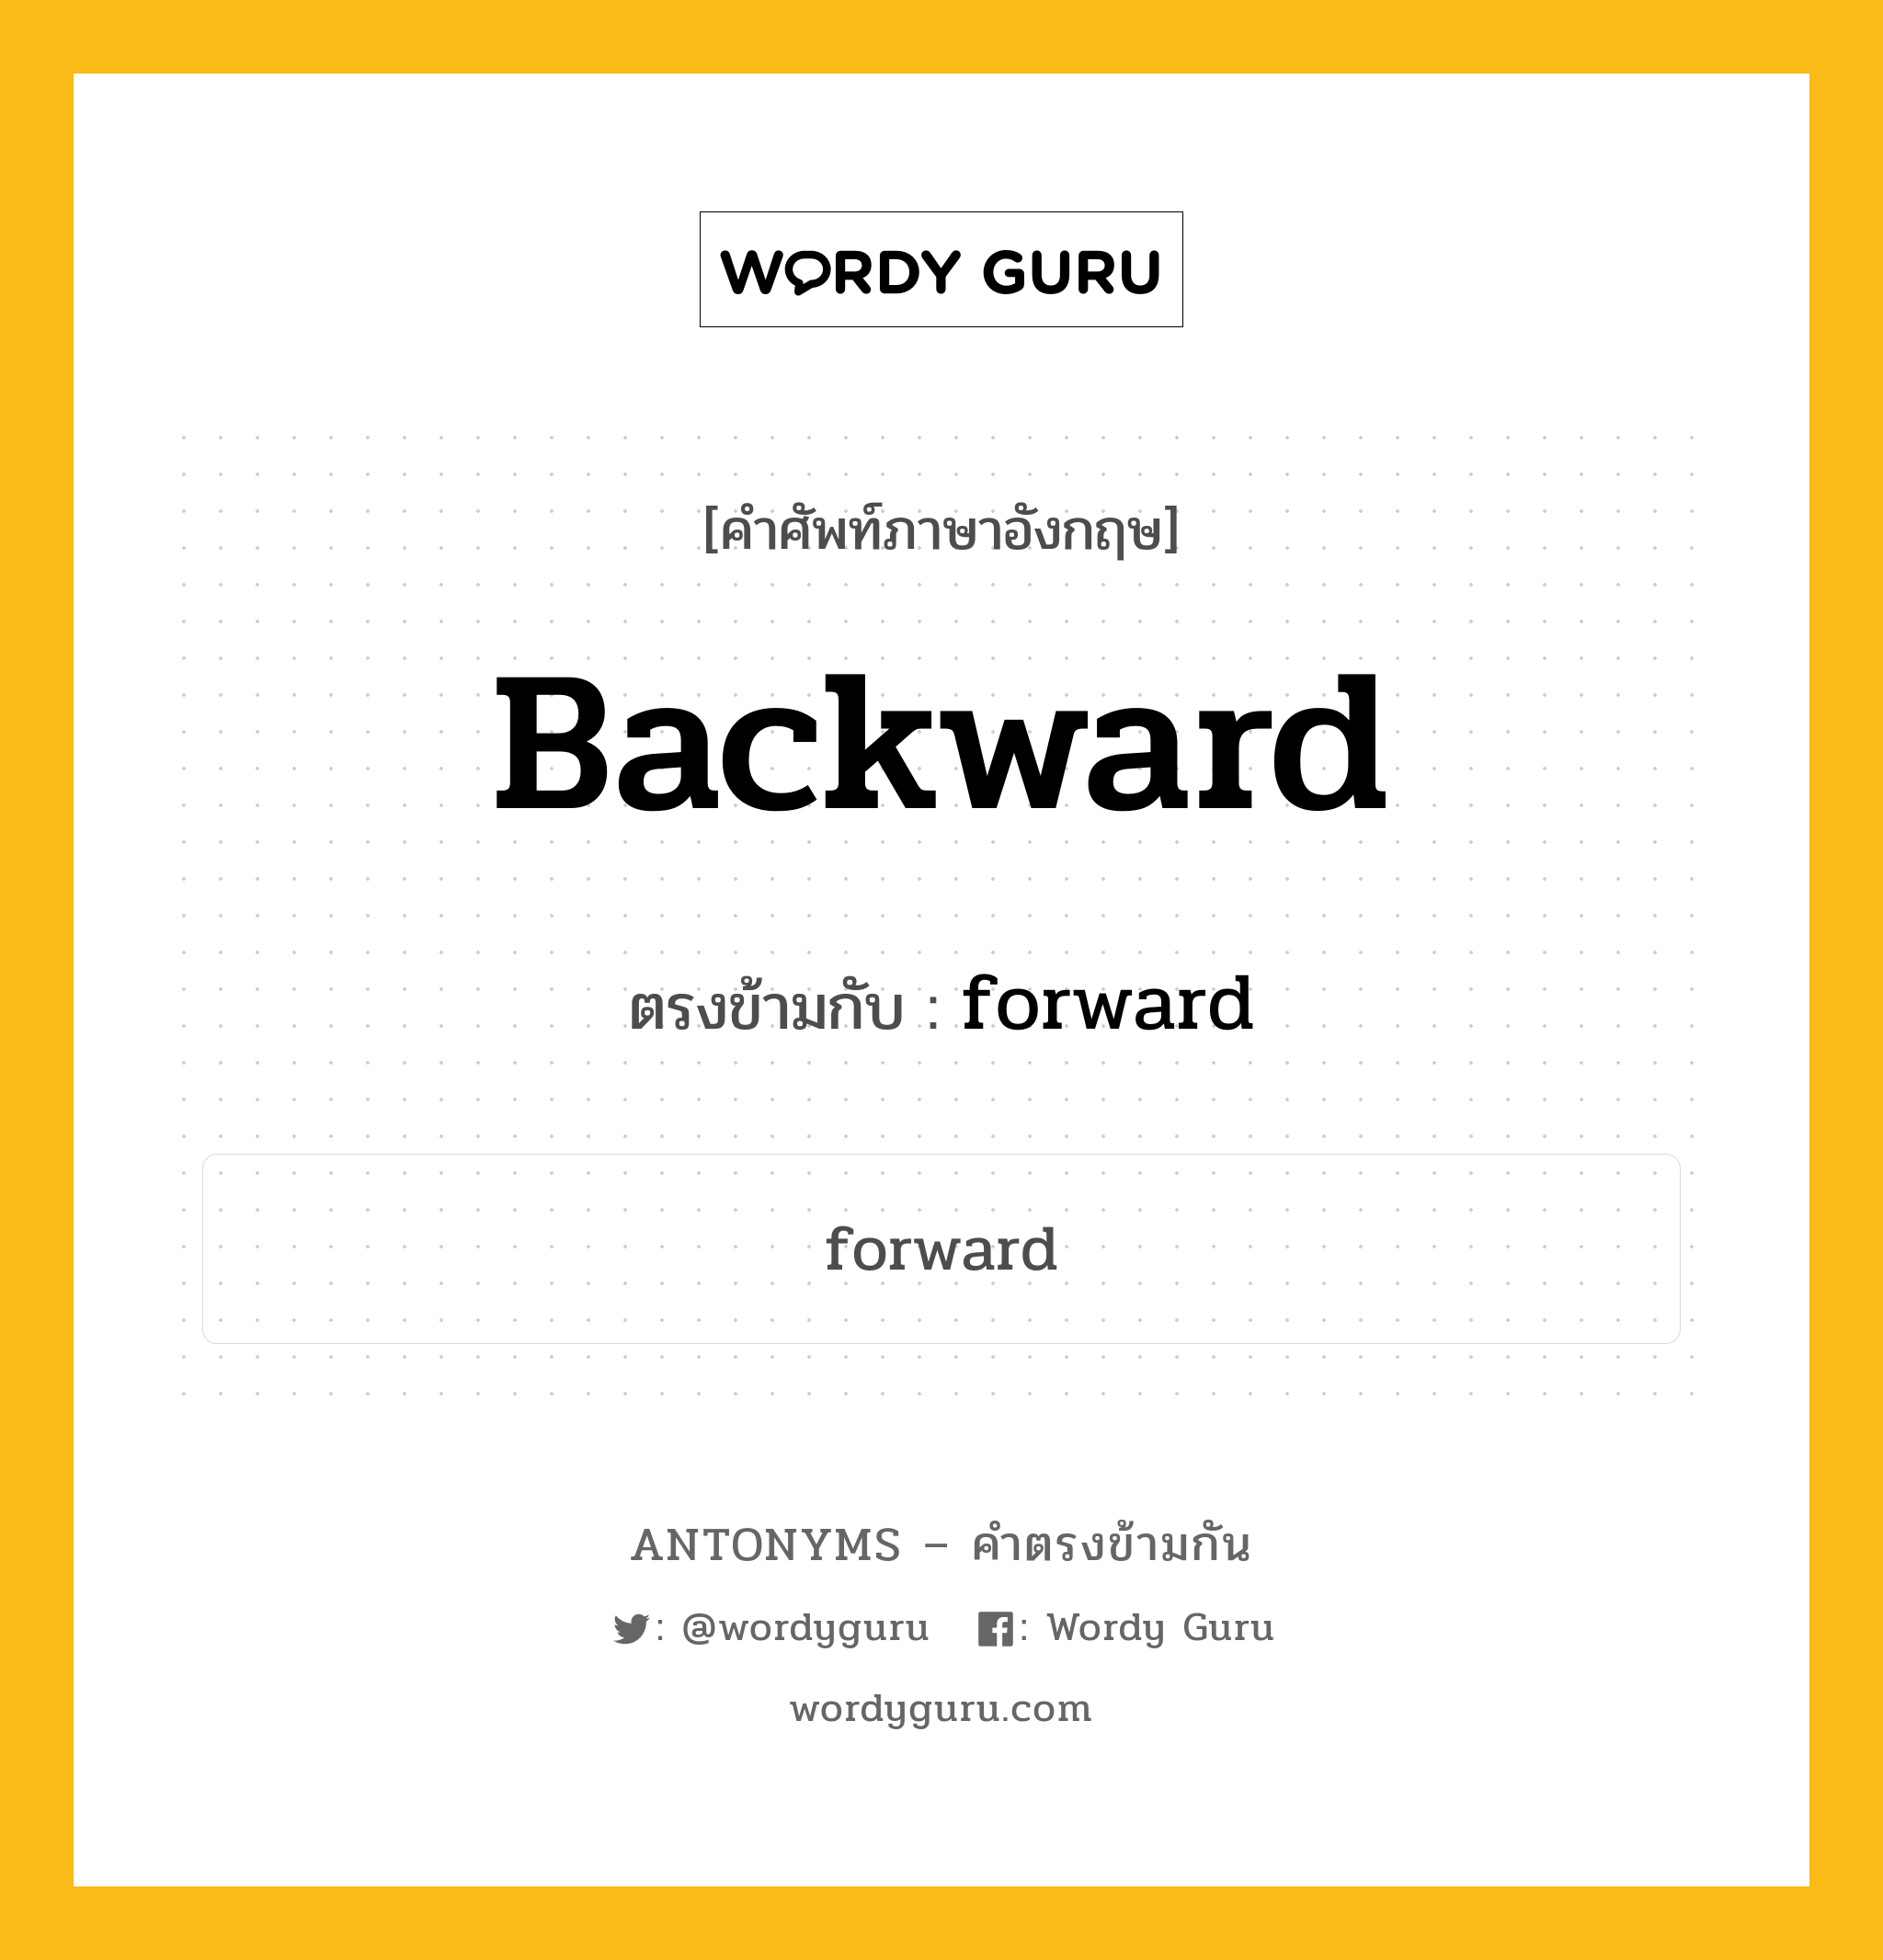 backward เป็นคำตรงข้ามกับคำไหนบ้าง?, คำศัพท์ภาษาอังกฤษ backward ตรงข้ามกับ forward หมวด forward